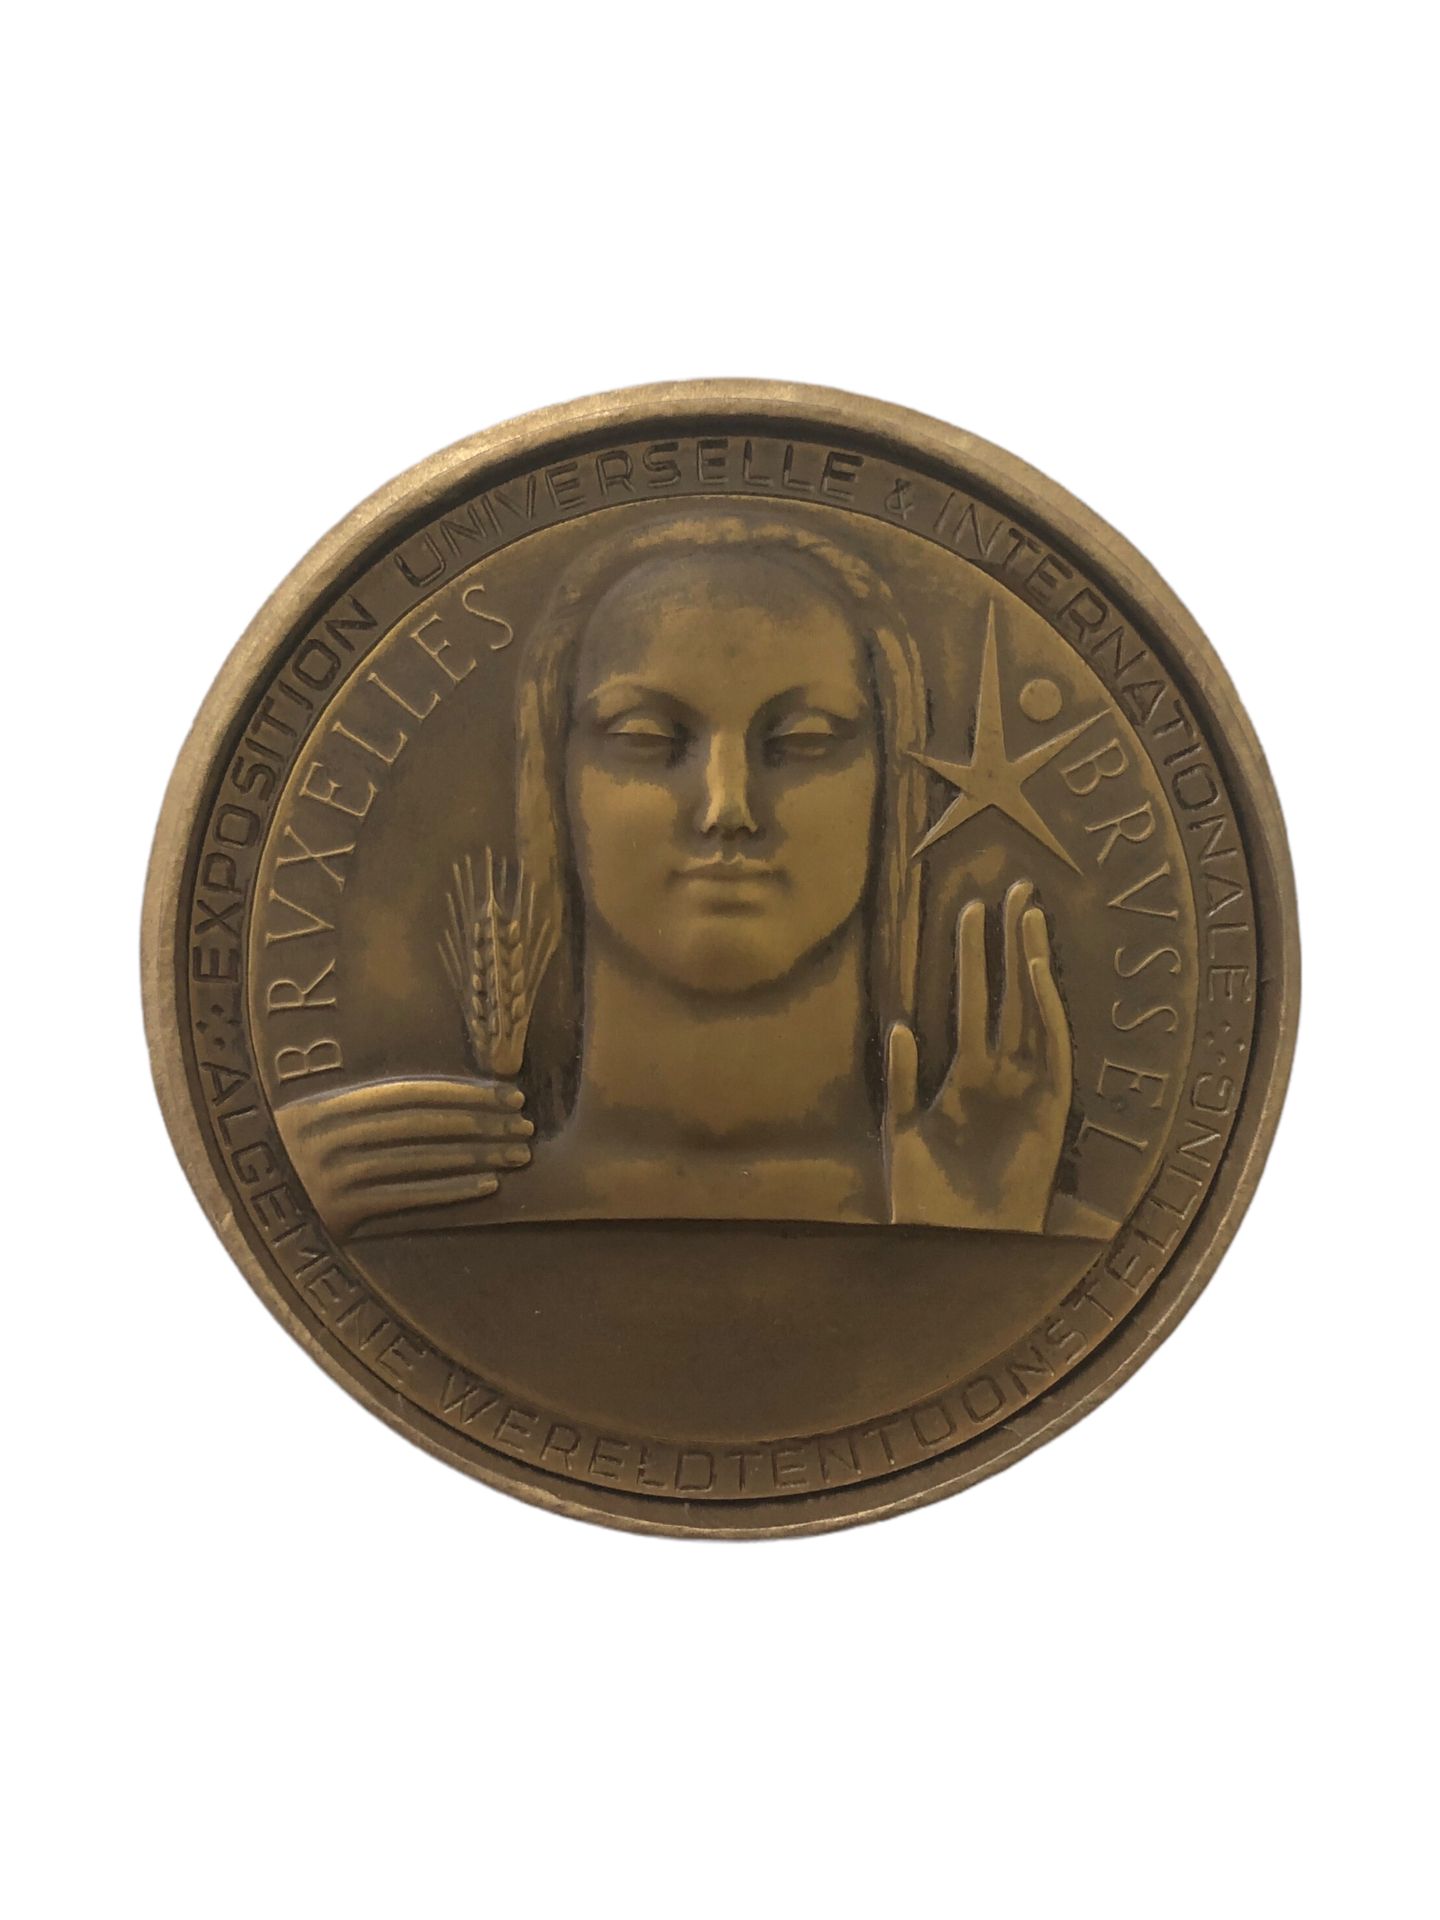 Null 在其案例中

一枚 "1958年布鲁塞尔世界博览会 "的铜牌。

背面有RAU的签名和1858年的日期。

直径6厘米。